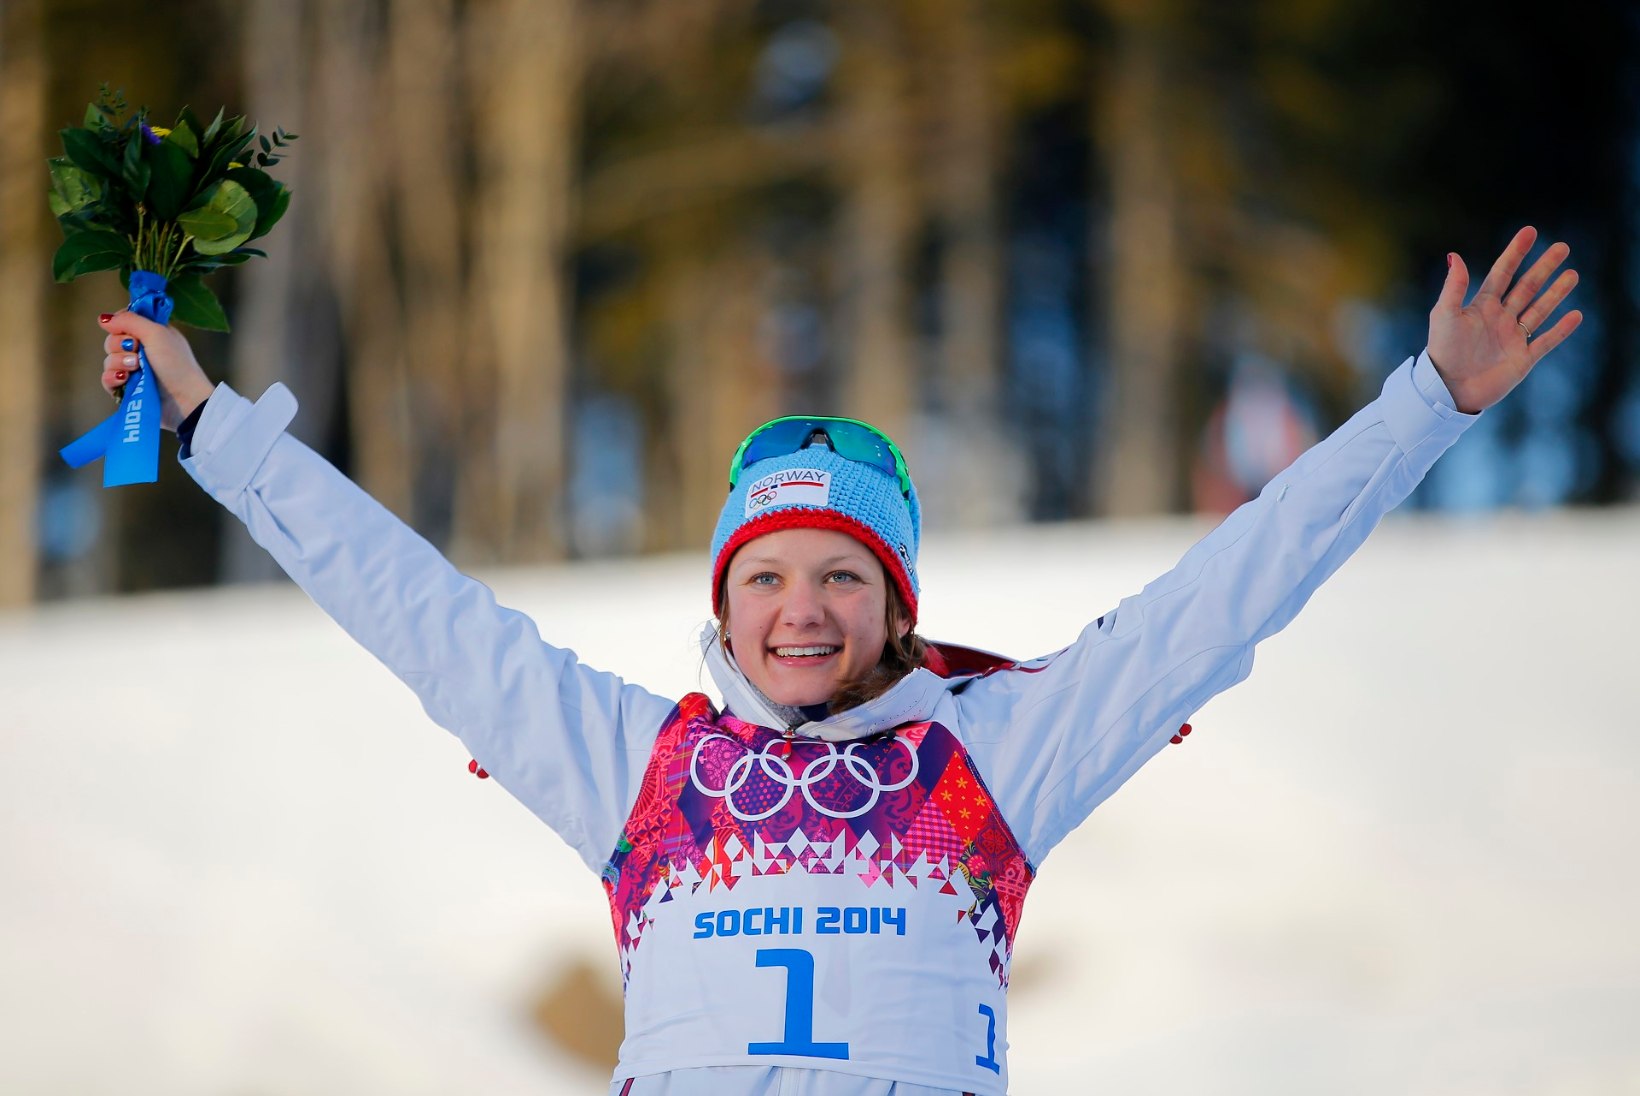 Norralased eelistavad sprindi olümpiavõitjale Marit Björgenit